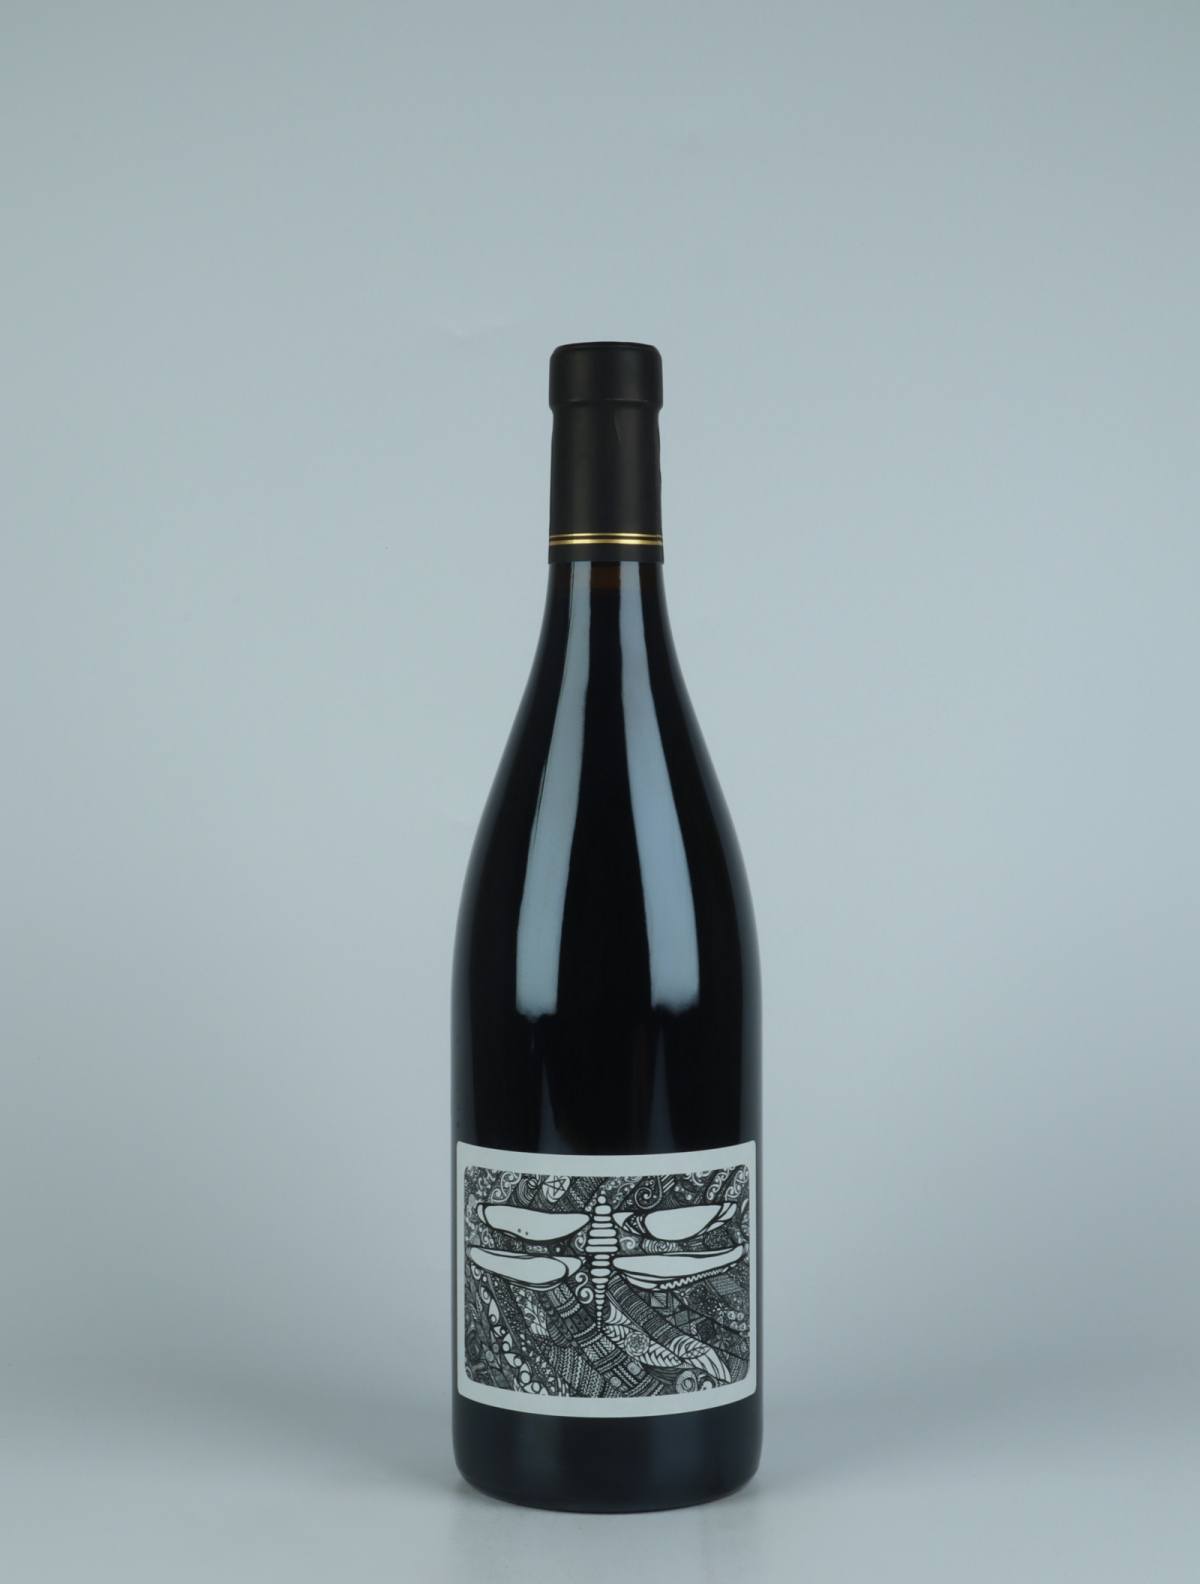 A bottle 2020 100% Red wine from Julien Courtois, Loire in France